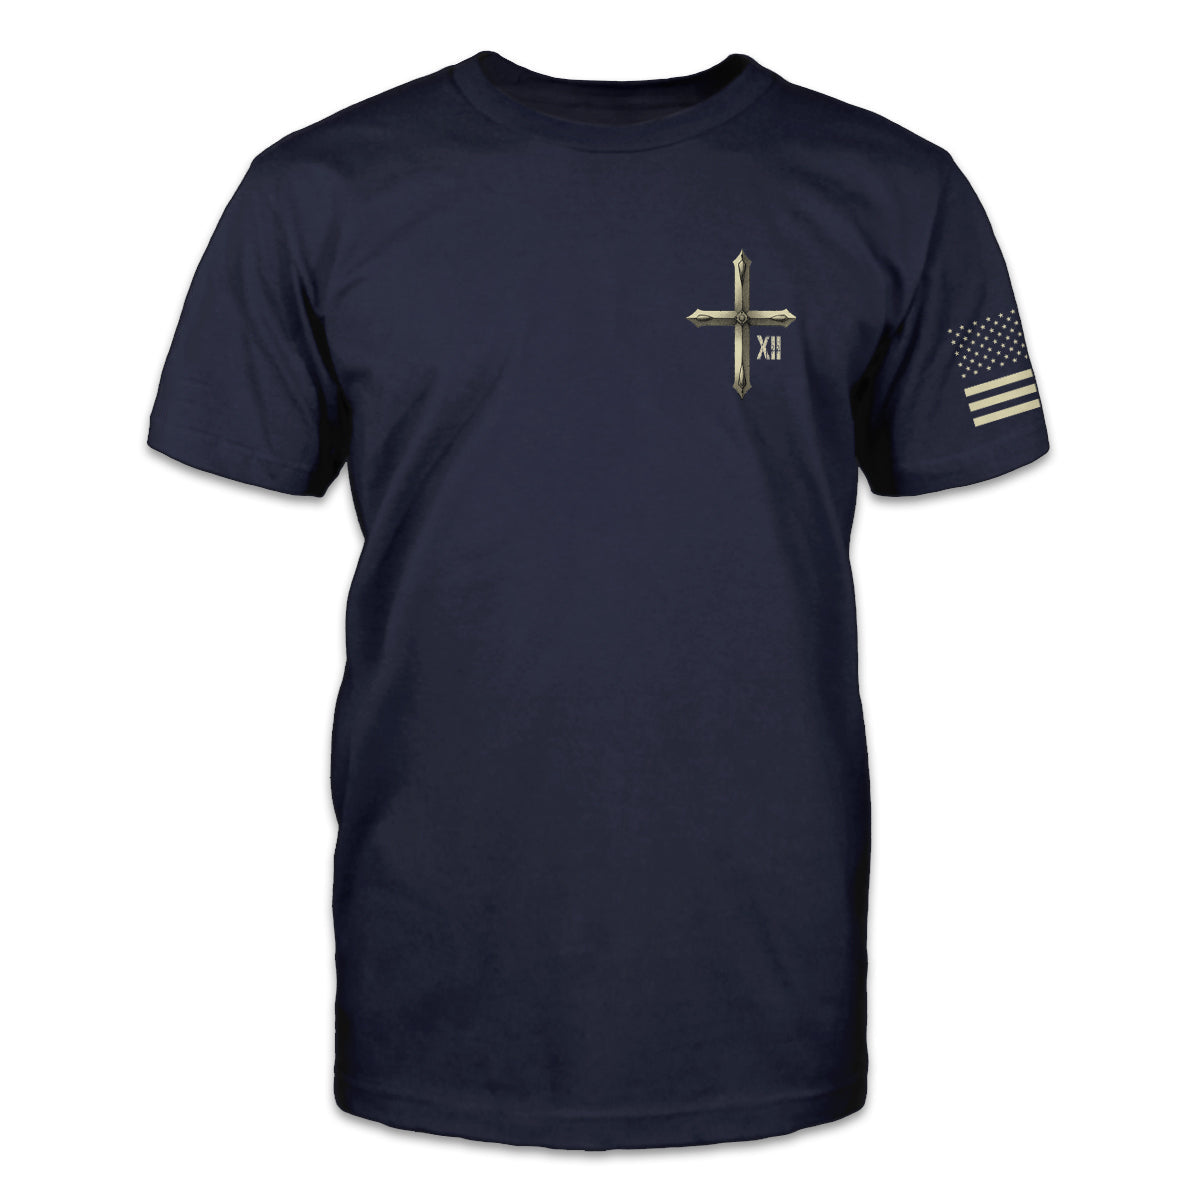 Unisex Faith Is My Compass Casual Short Sleeve T-Shirt